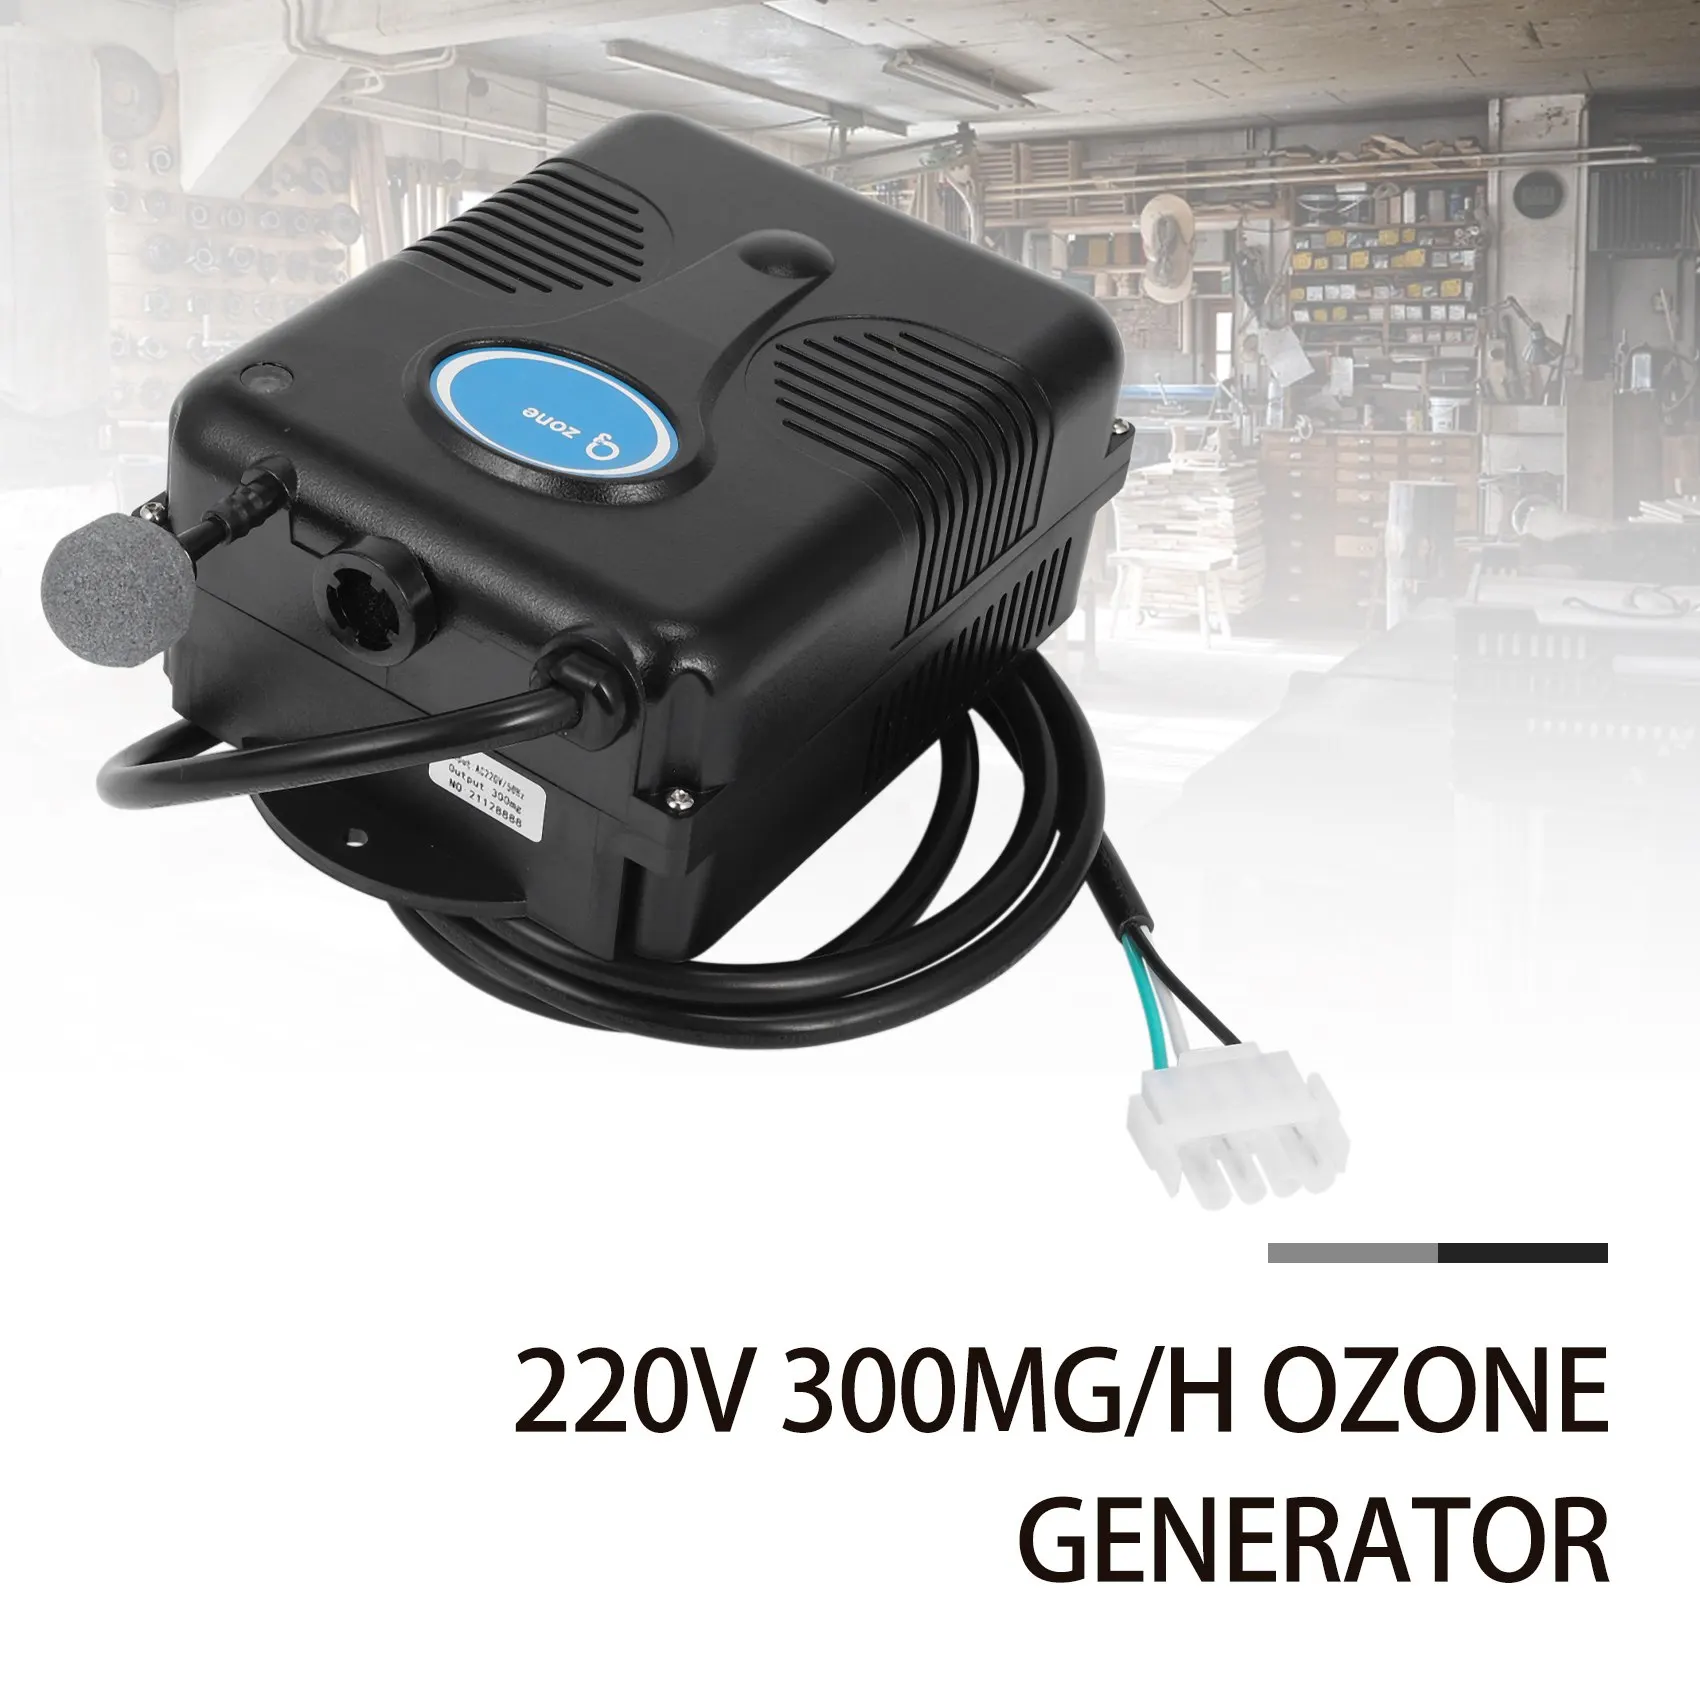 spa-ozone-generator-for-bathtub-shower-piscina-ozonizador-purificador-de-agua-de-banheira-kit-de-dispositivo-de-substituicao-mangueira-de-valvula-220v-300-mg-h